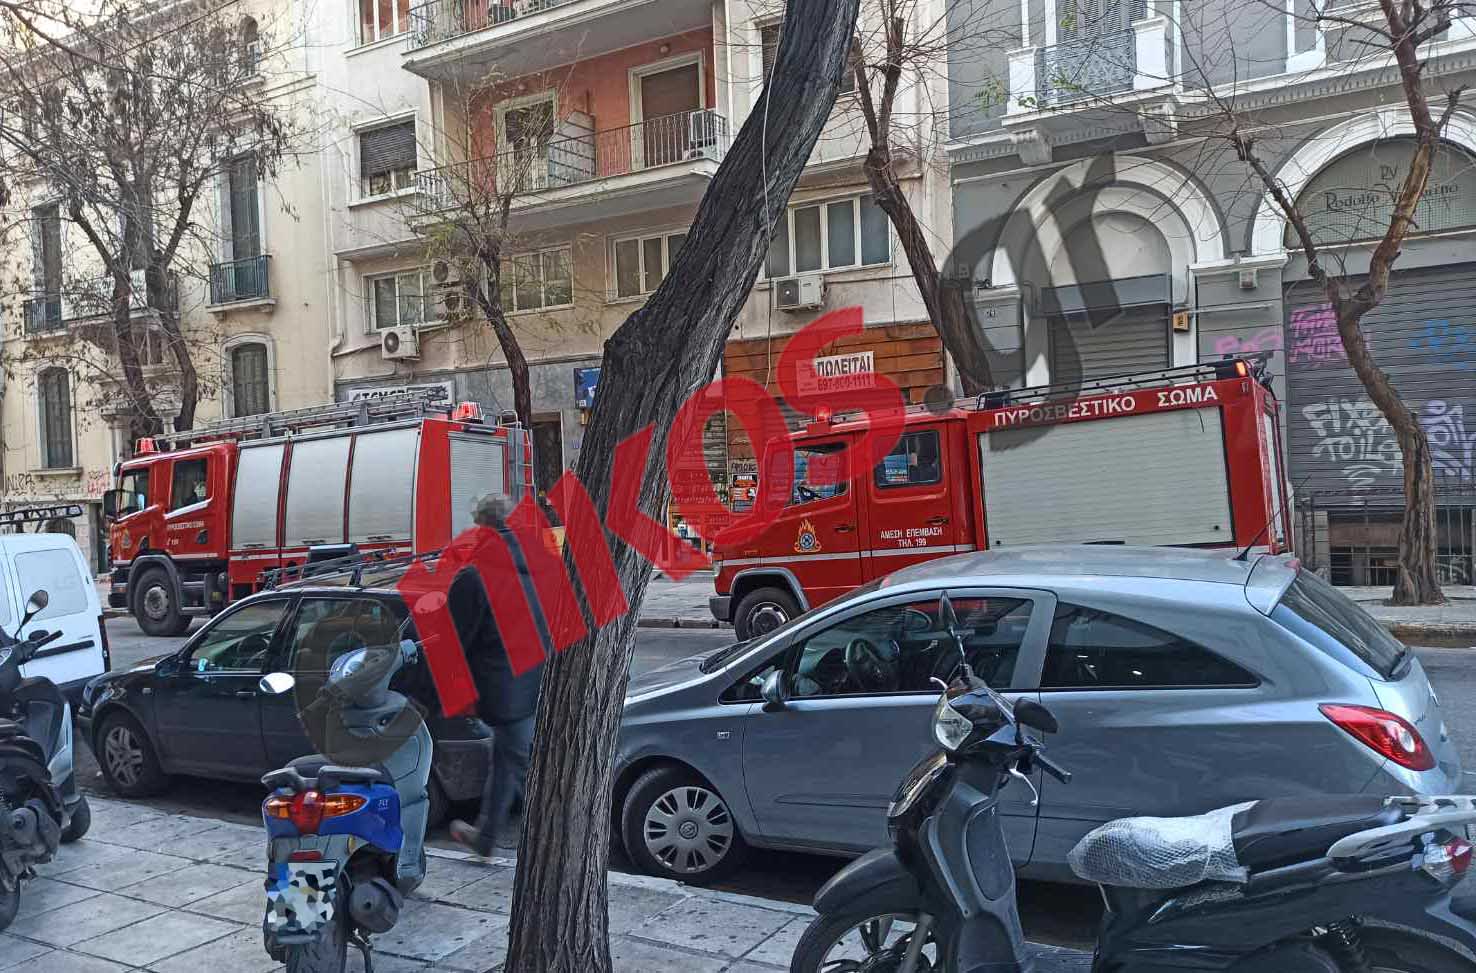 Τηλεφώνημα για βόμβα σε ΜΚΟ στο κέντρο της Αθήνας – ΦΩΤΟ αναγνώστη